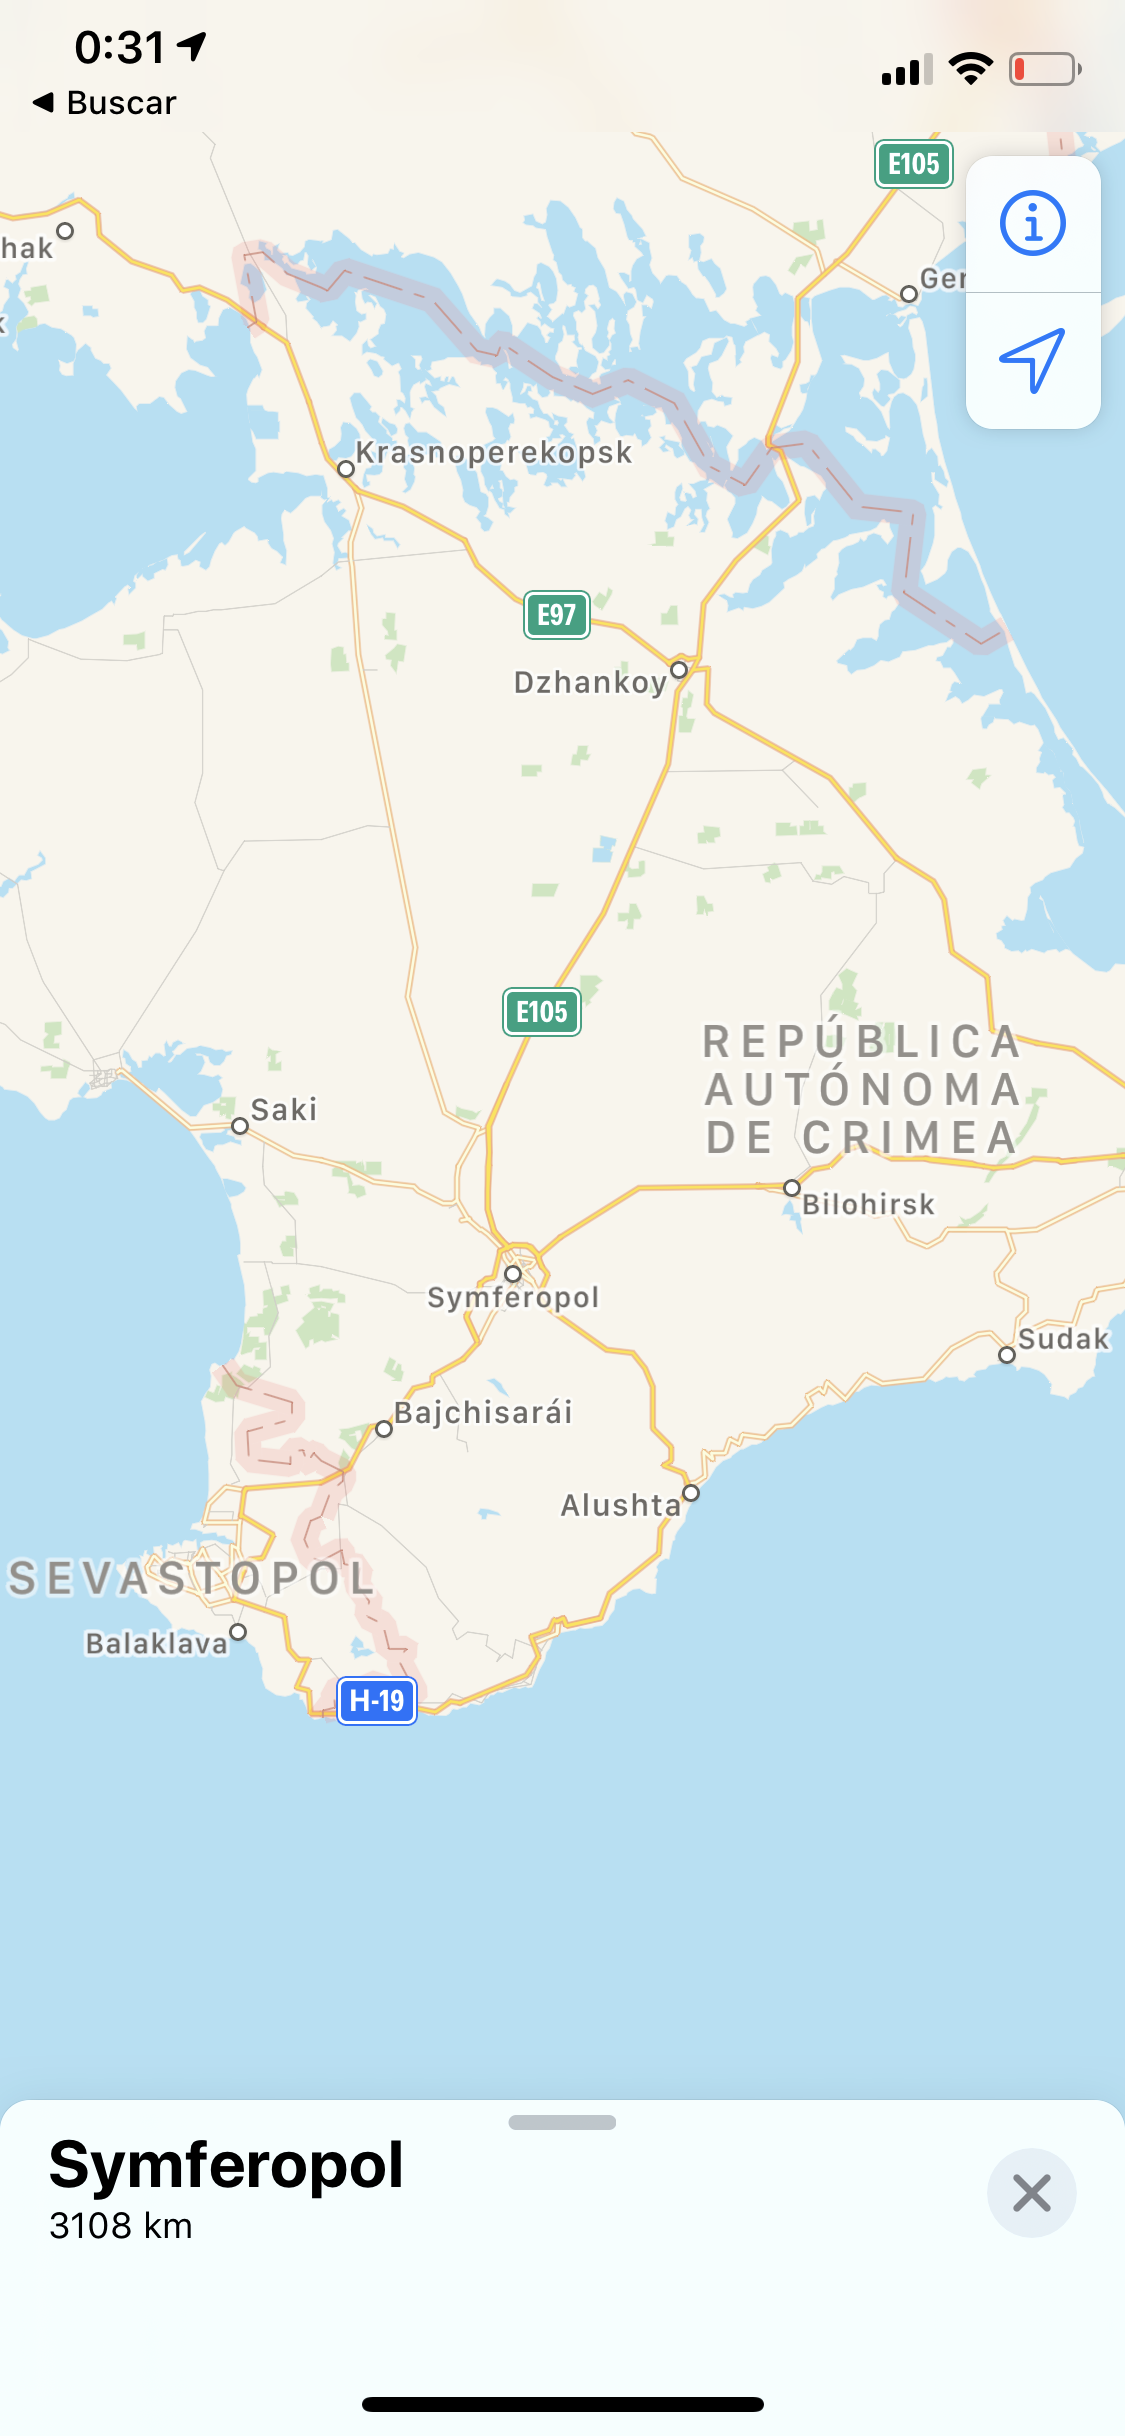 App de Mapas mostrando Crimea